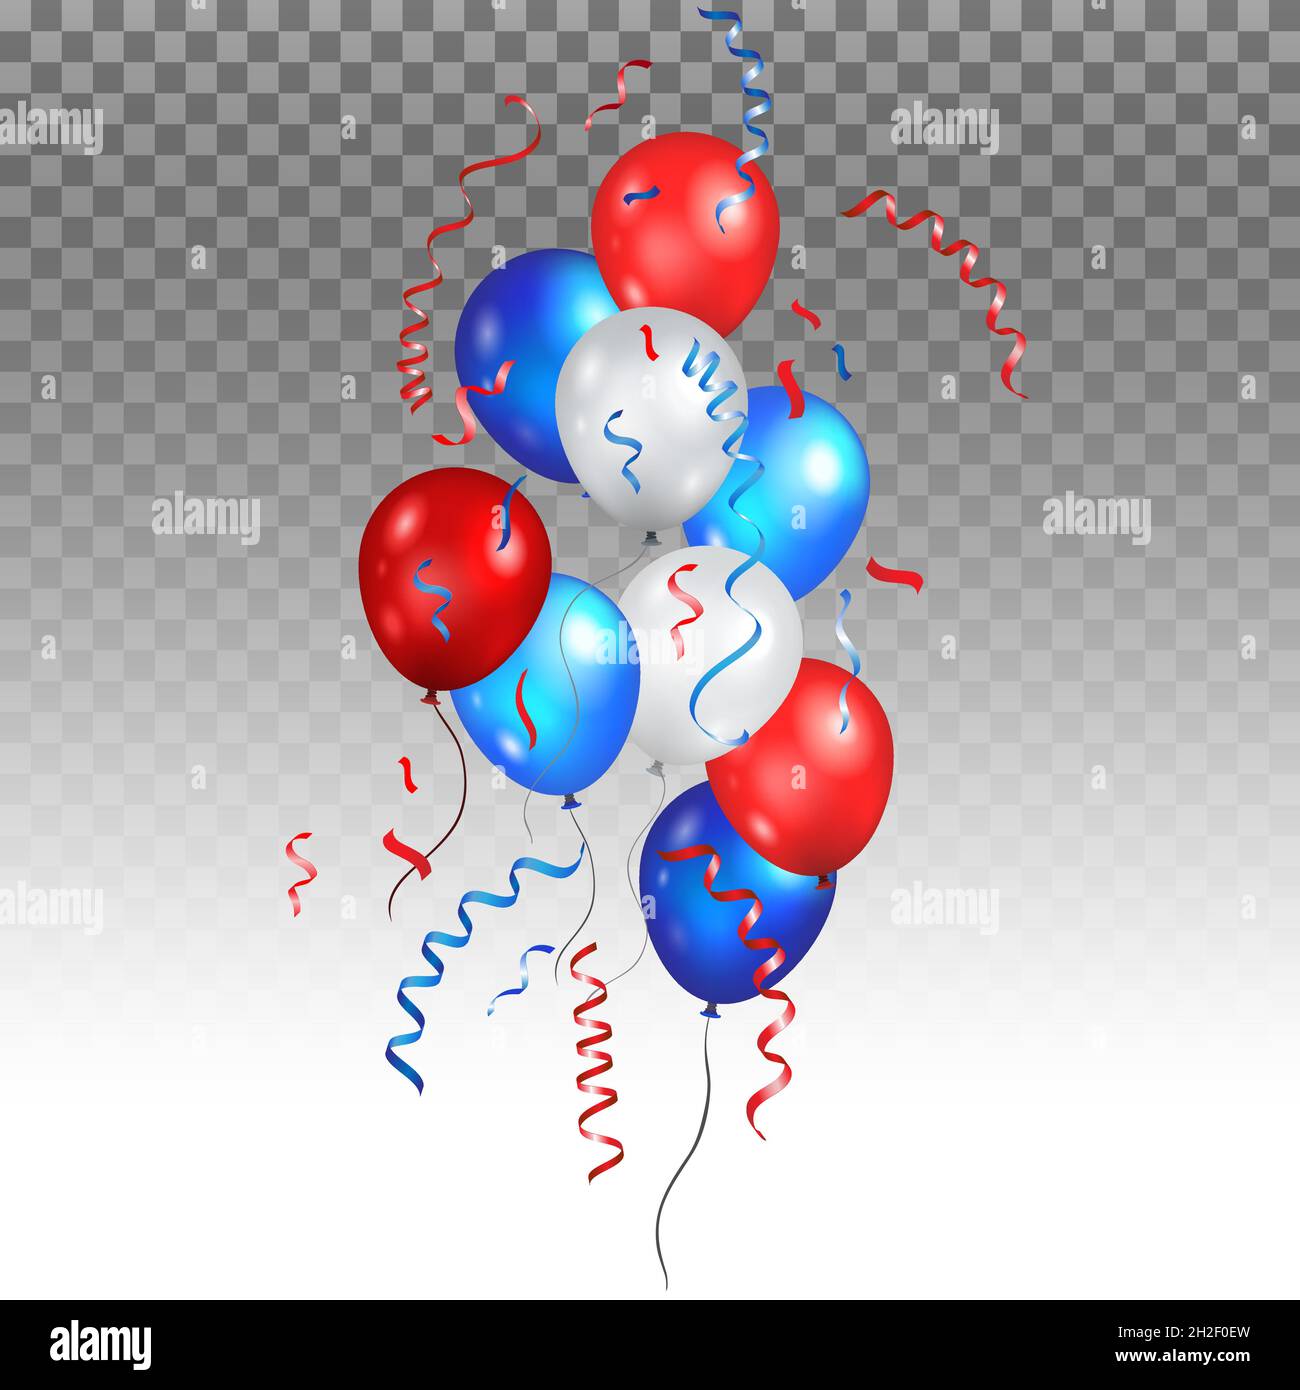 Farbe Urlaub Luftballons Haufen in traditionellen Farben - rot, weiß, blau. Festtagsballons auf transparentem Banner. Stock Vektor